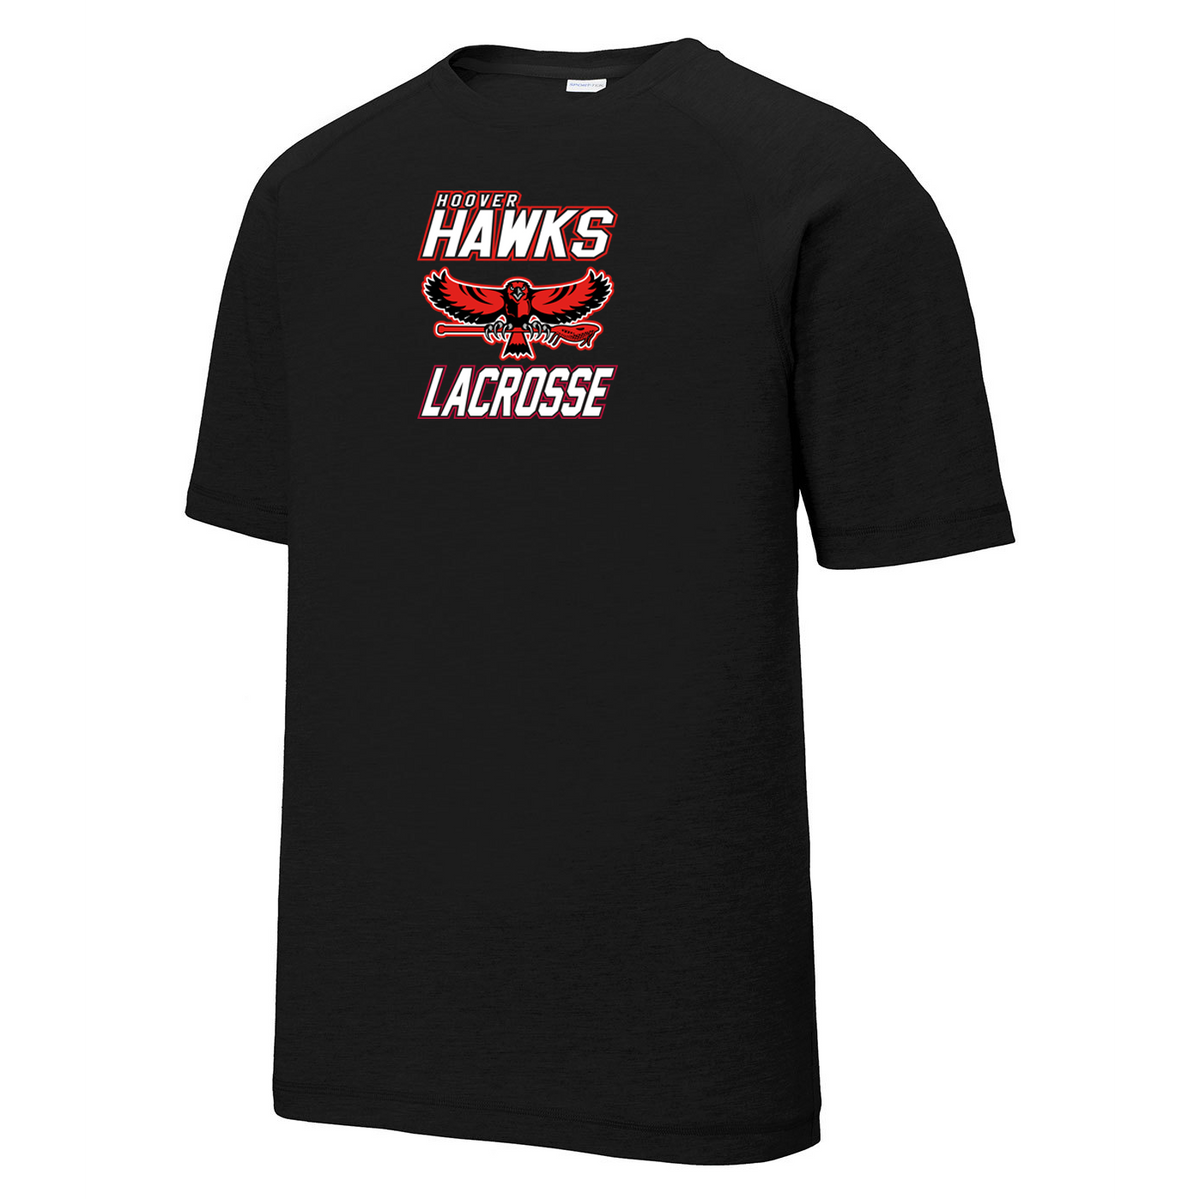 Hawks Lacrosse Raglan CottonTouch Tee